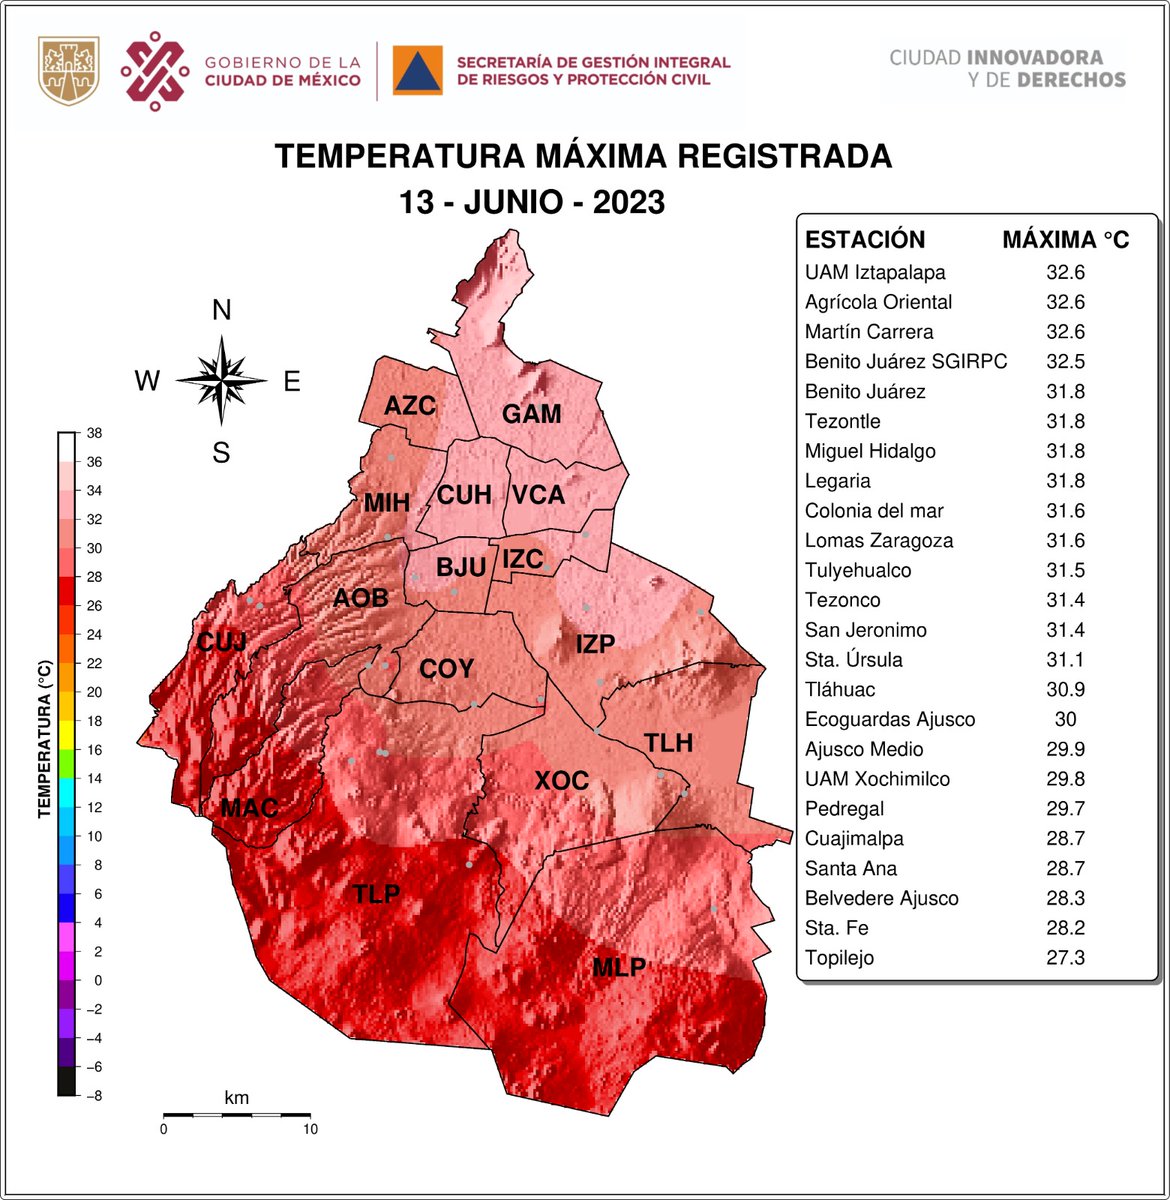 La temperatura máxima registrada hoy en la #CDMX fue de 32.6°C en UAM Iztapalapa.